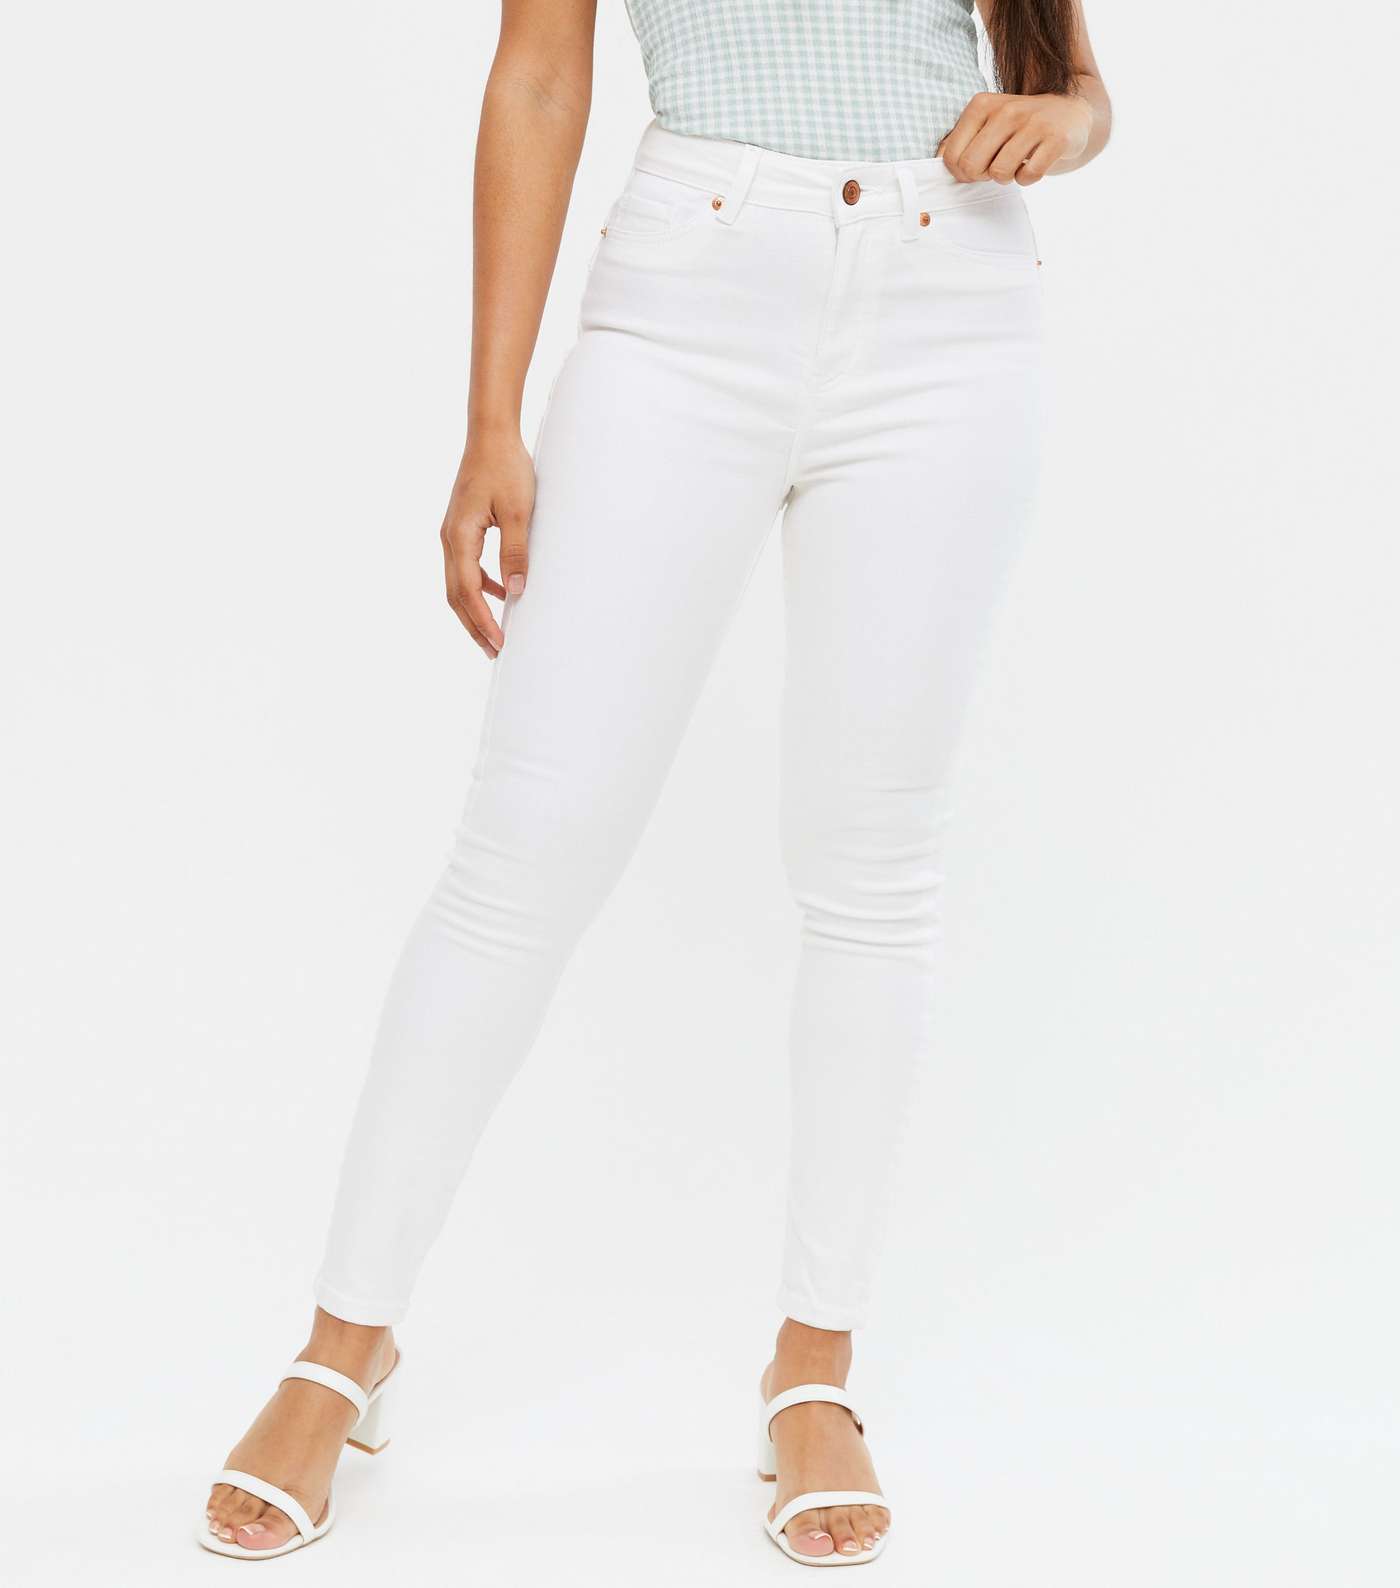 Petite White Lift & Shape Jenna Skinny Jeans Image 2